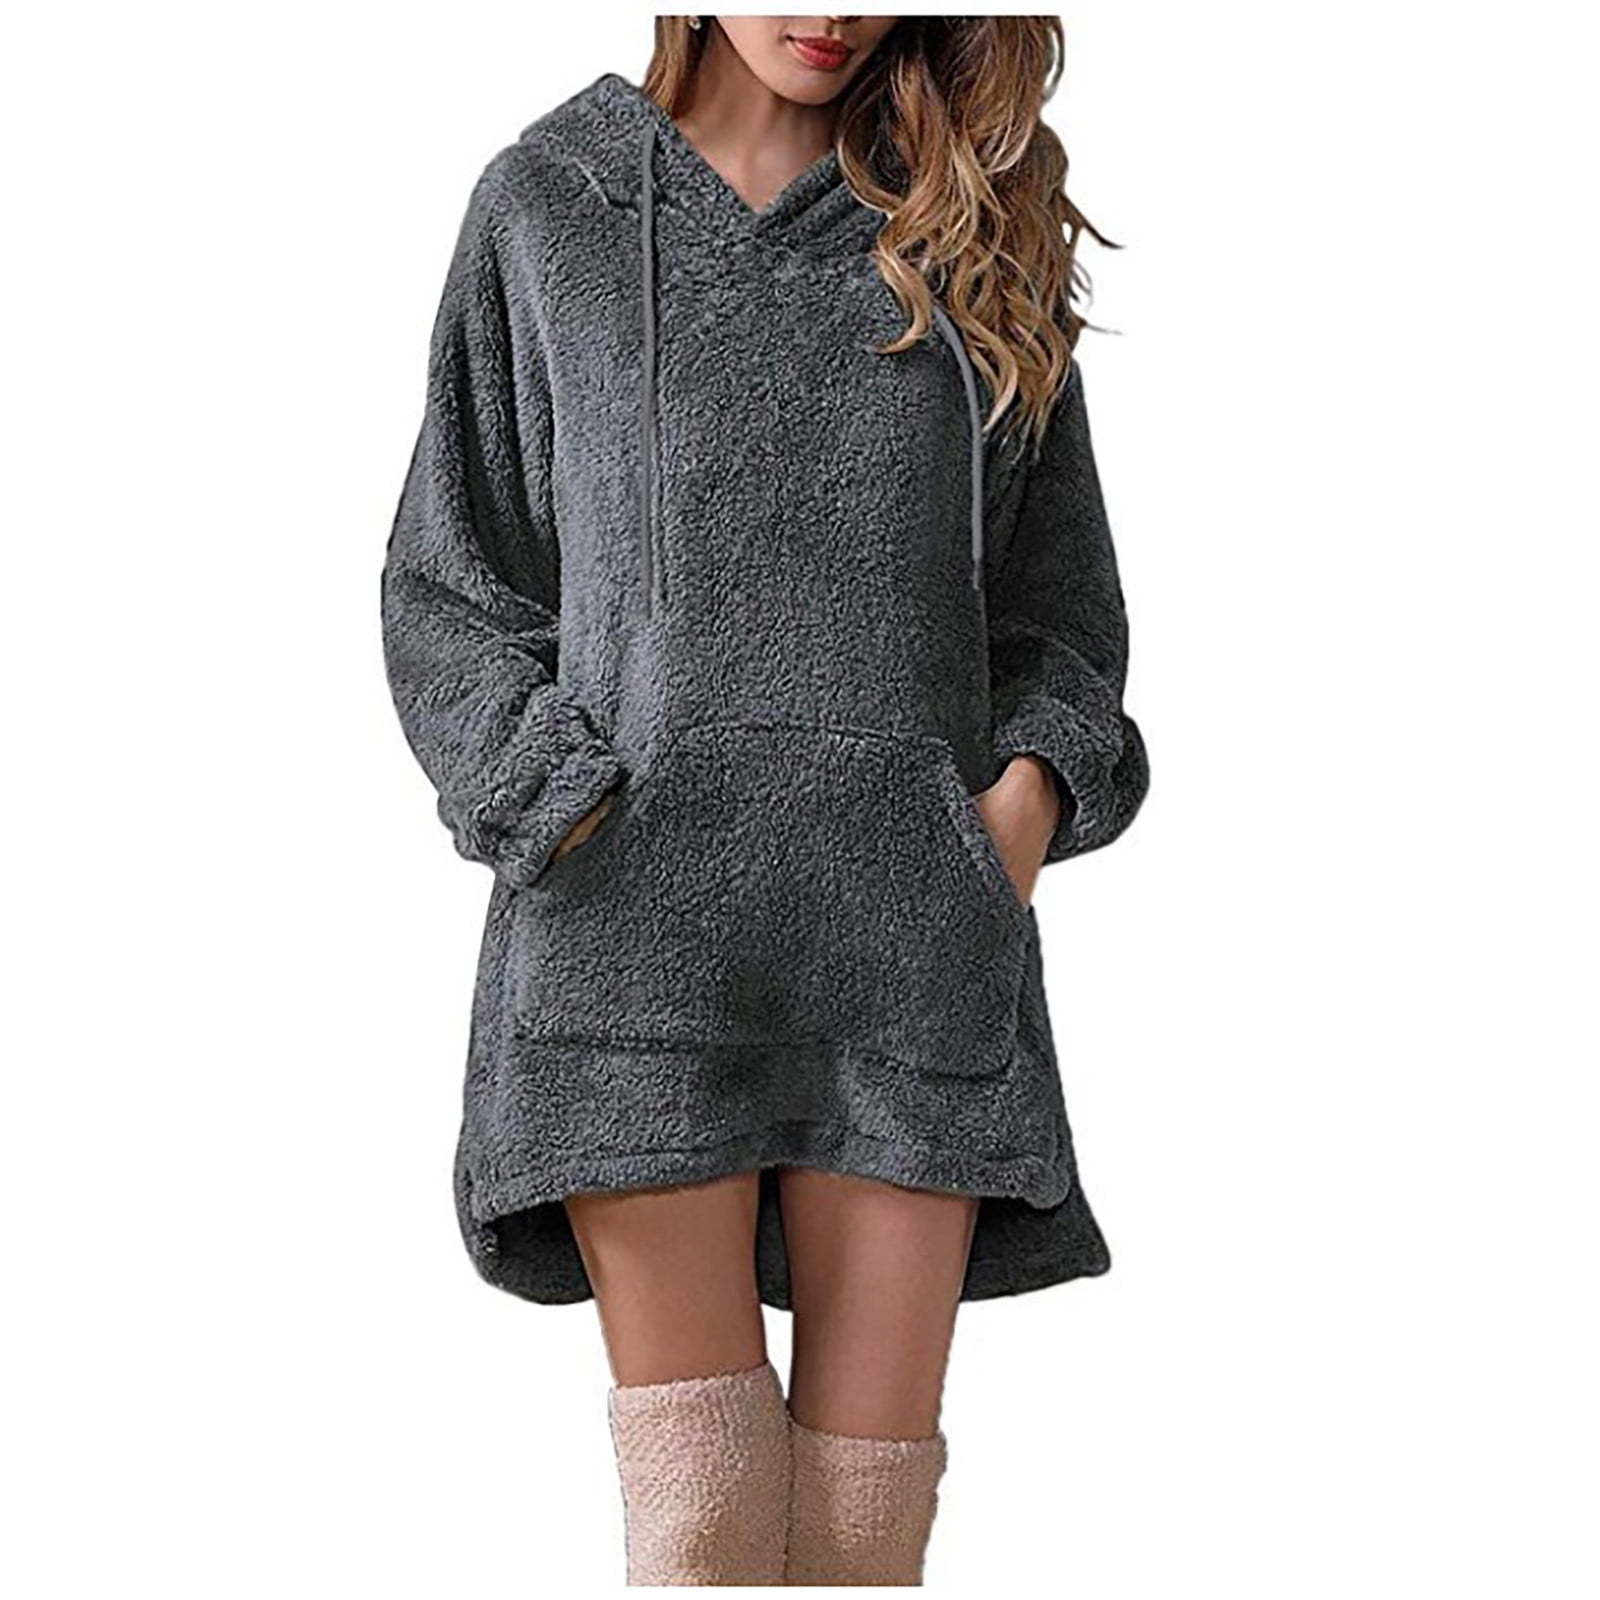 Hfyihgf Women's Long Sherpa Hoodie Pullover Fuzzy Fleece Oversized Hooded  Sweatshirt Dresses Winter Warm Tunic Tops Outwear with Pocket(Black,L)